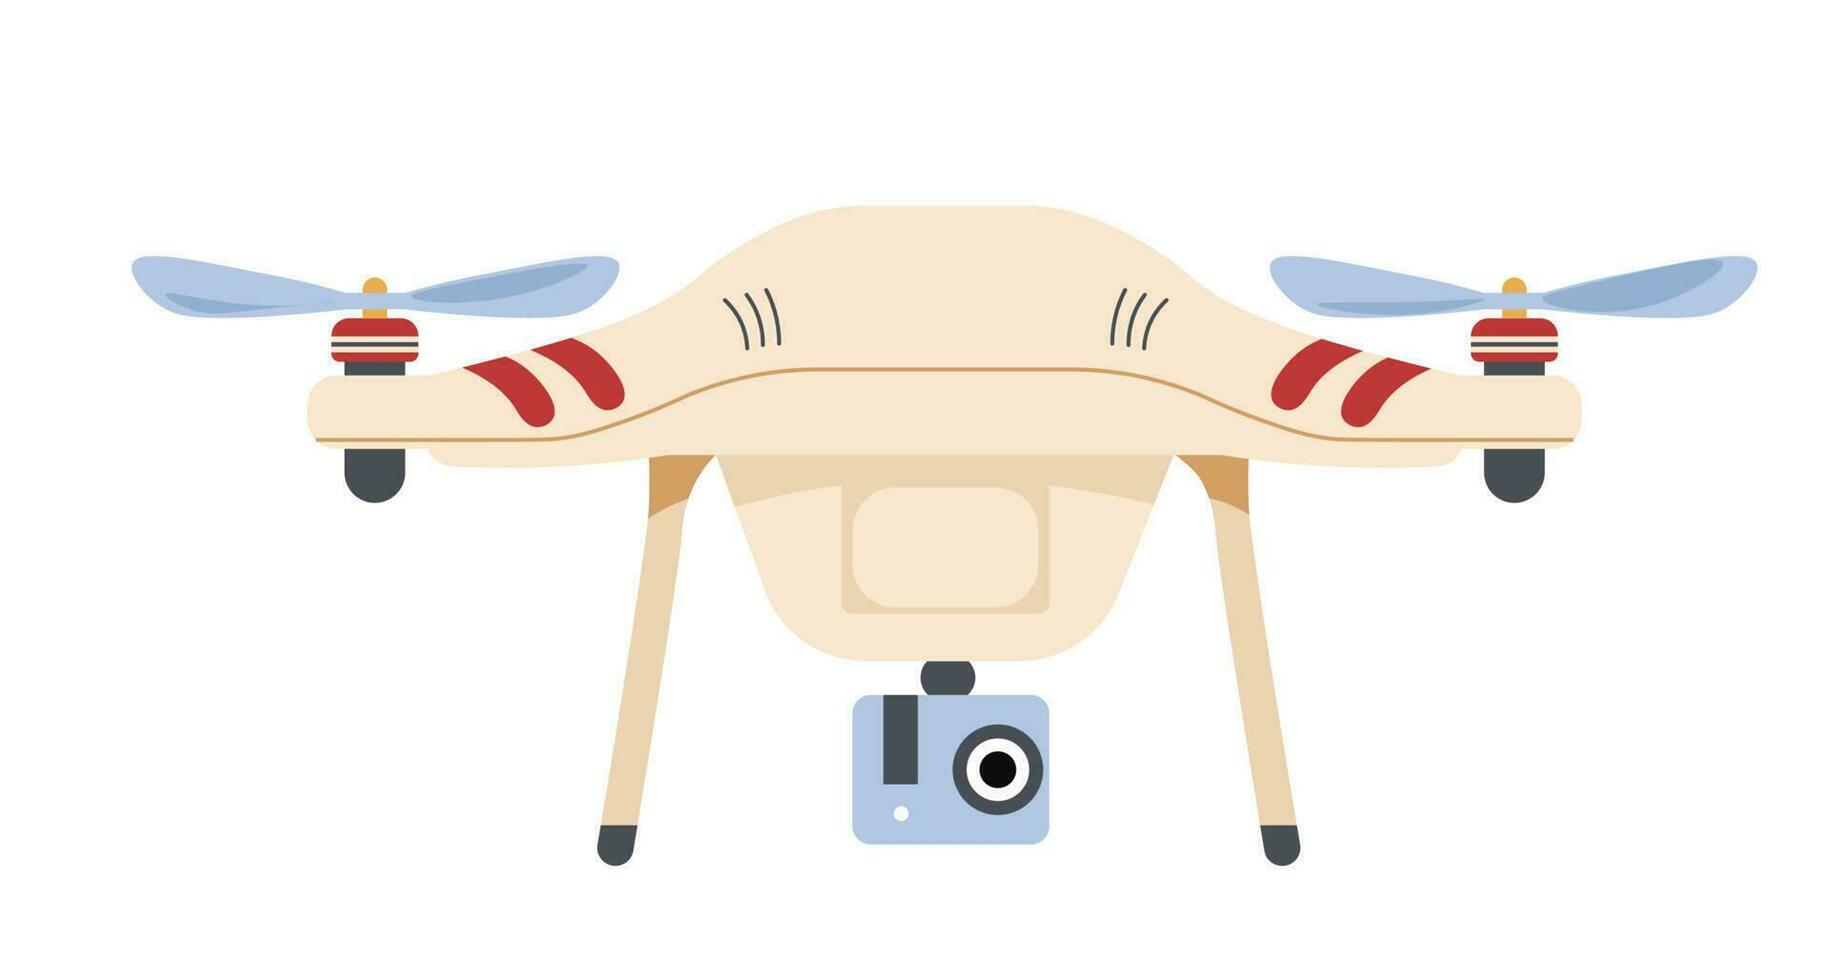 Drohne mit Kamera und Flügel Propeller, Vektor